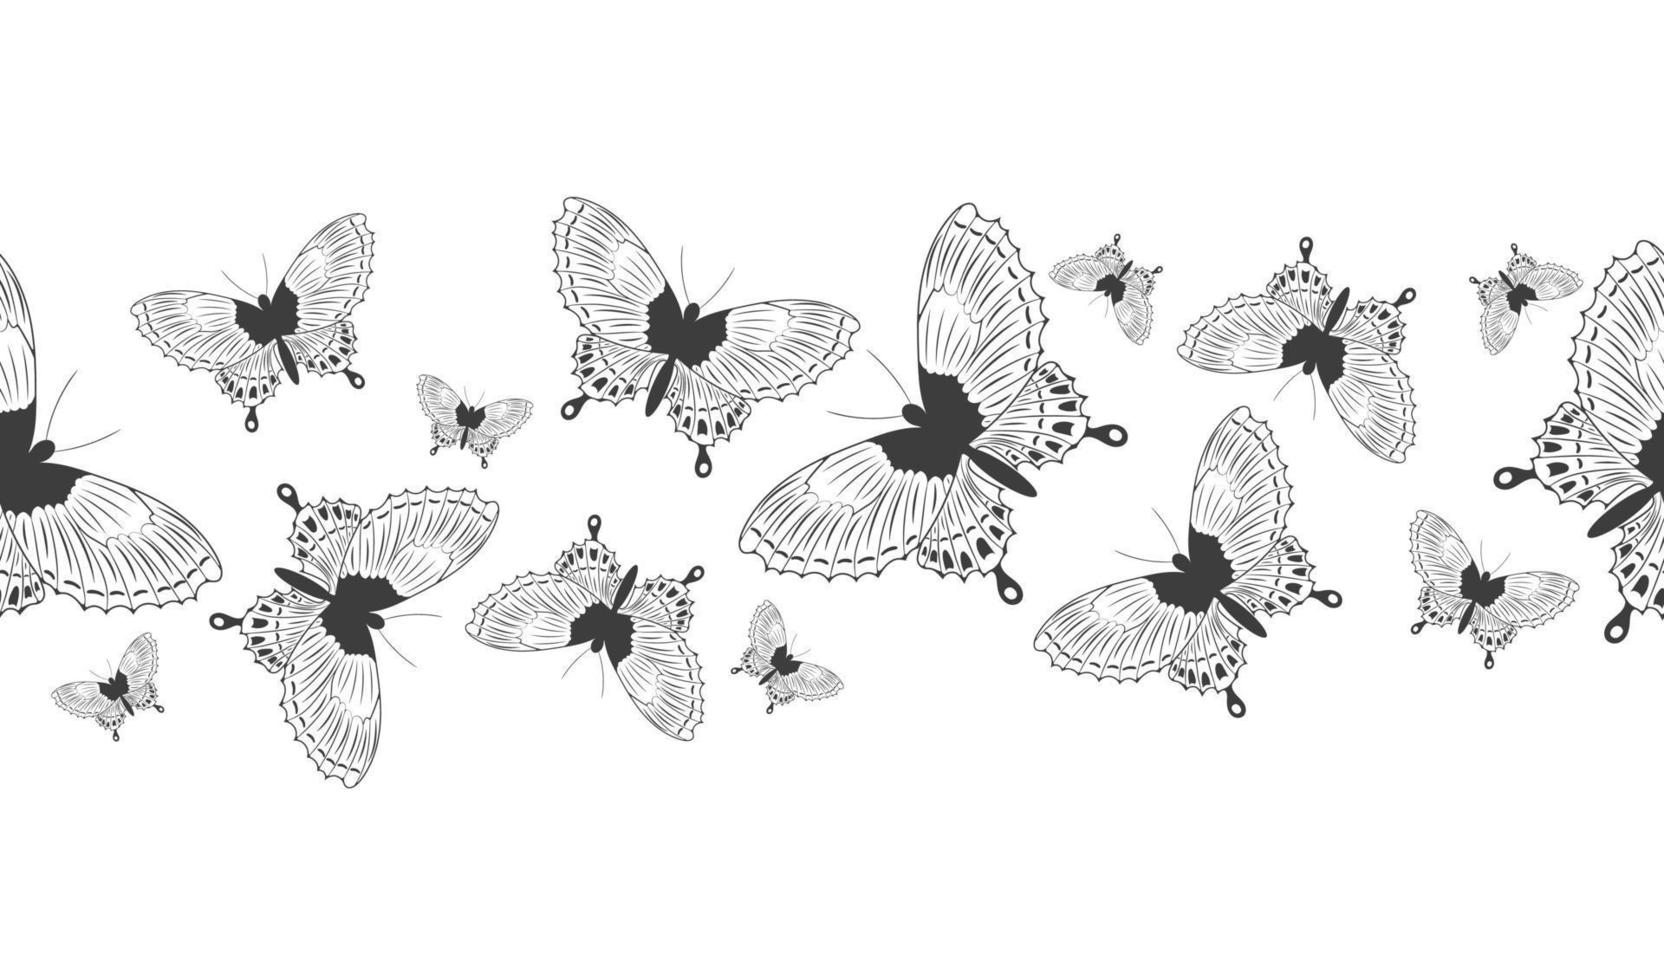 bannière de bordure transparente avec silhouette noire abstraite de mignons papillons volants isolés sur fond blanc pour ruban décoratif vecteur